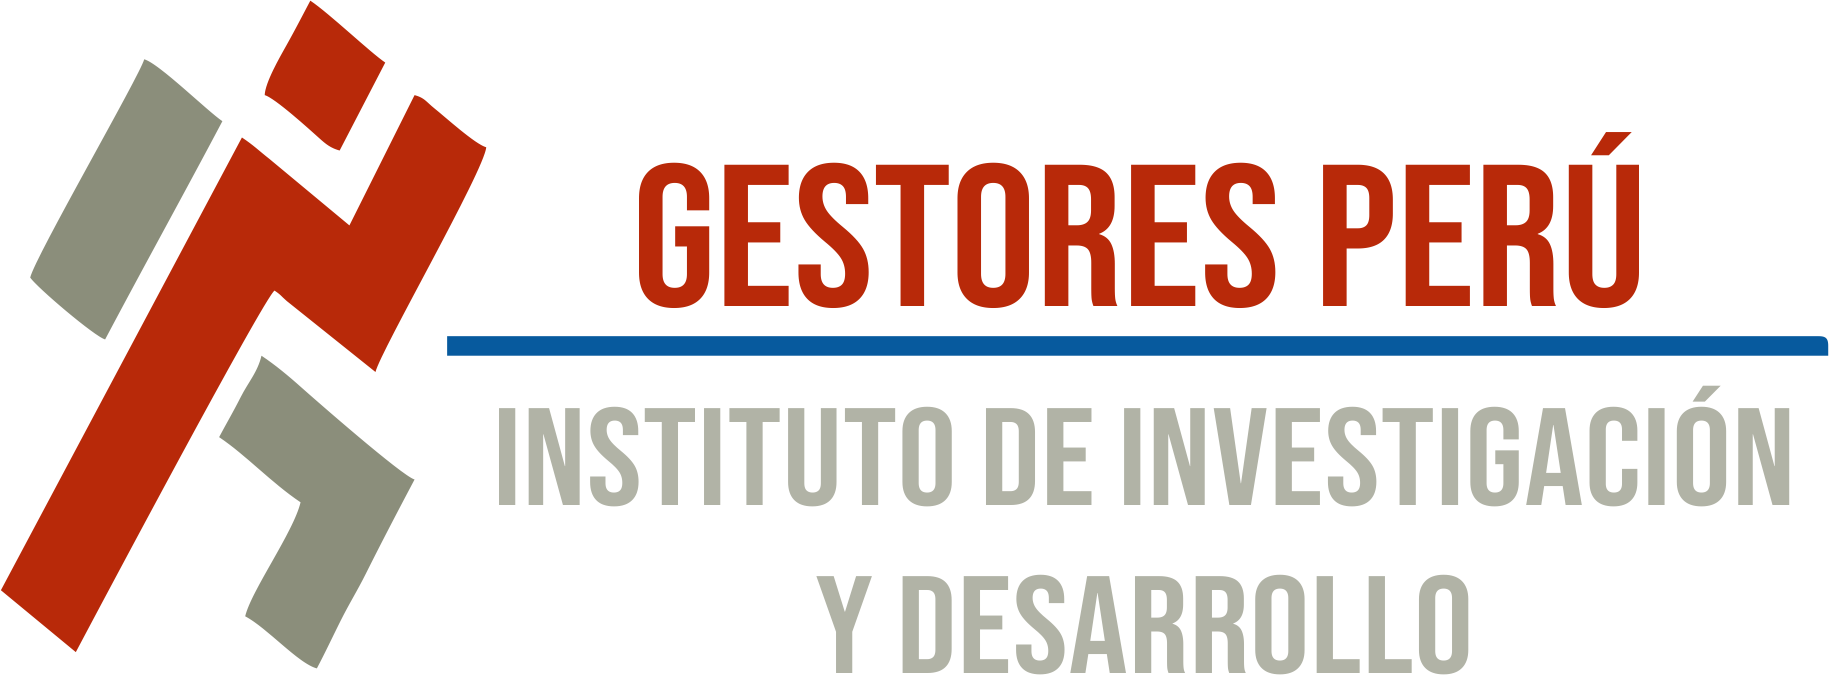 Instituto Gestores del Peru